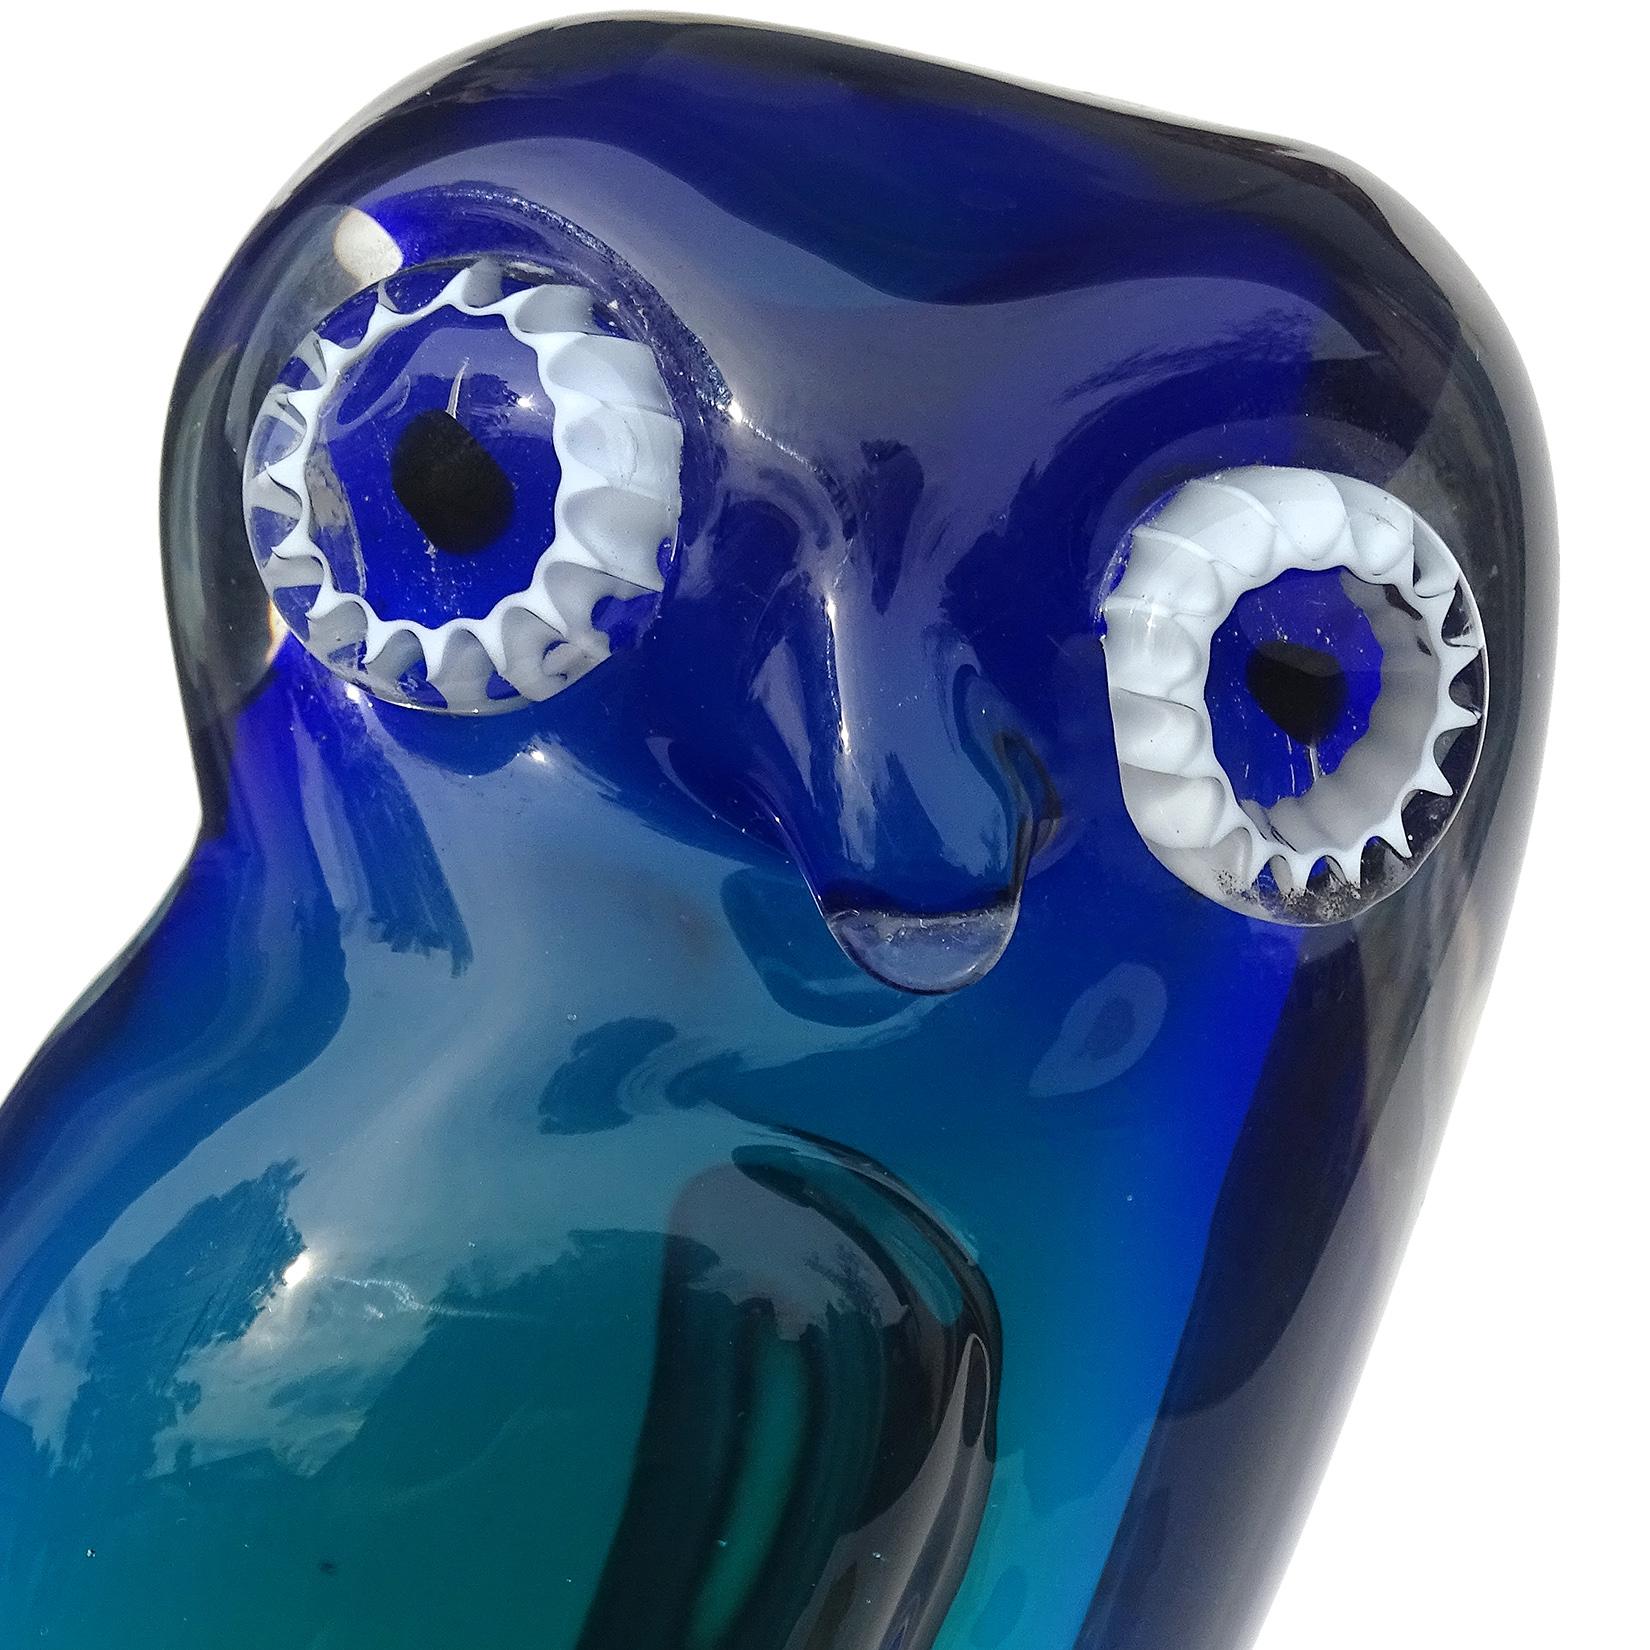 Schöne Vintage Murano mundgeblasen Sommerso kobaltblau bis teal blau italienische Kunst Glas Eule Skulptur. Dokumentiert bei der Firma Salviati. Habe mehrere mit Etiketten besessen. Sie hat weiße Murrinen für die Augen und steht auf einem Sockel aus